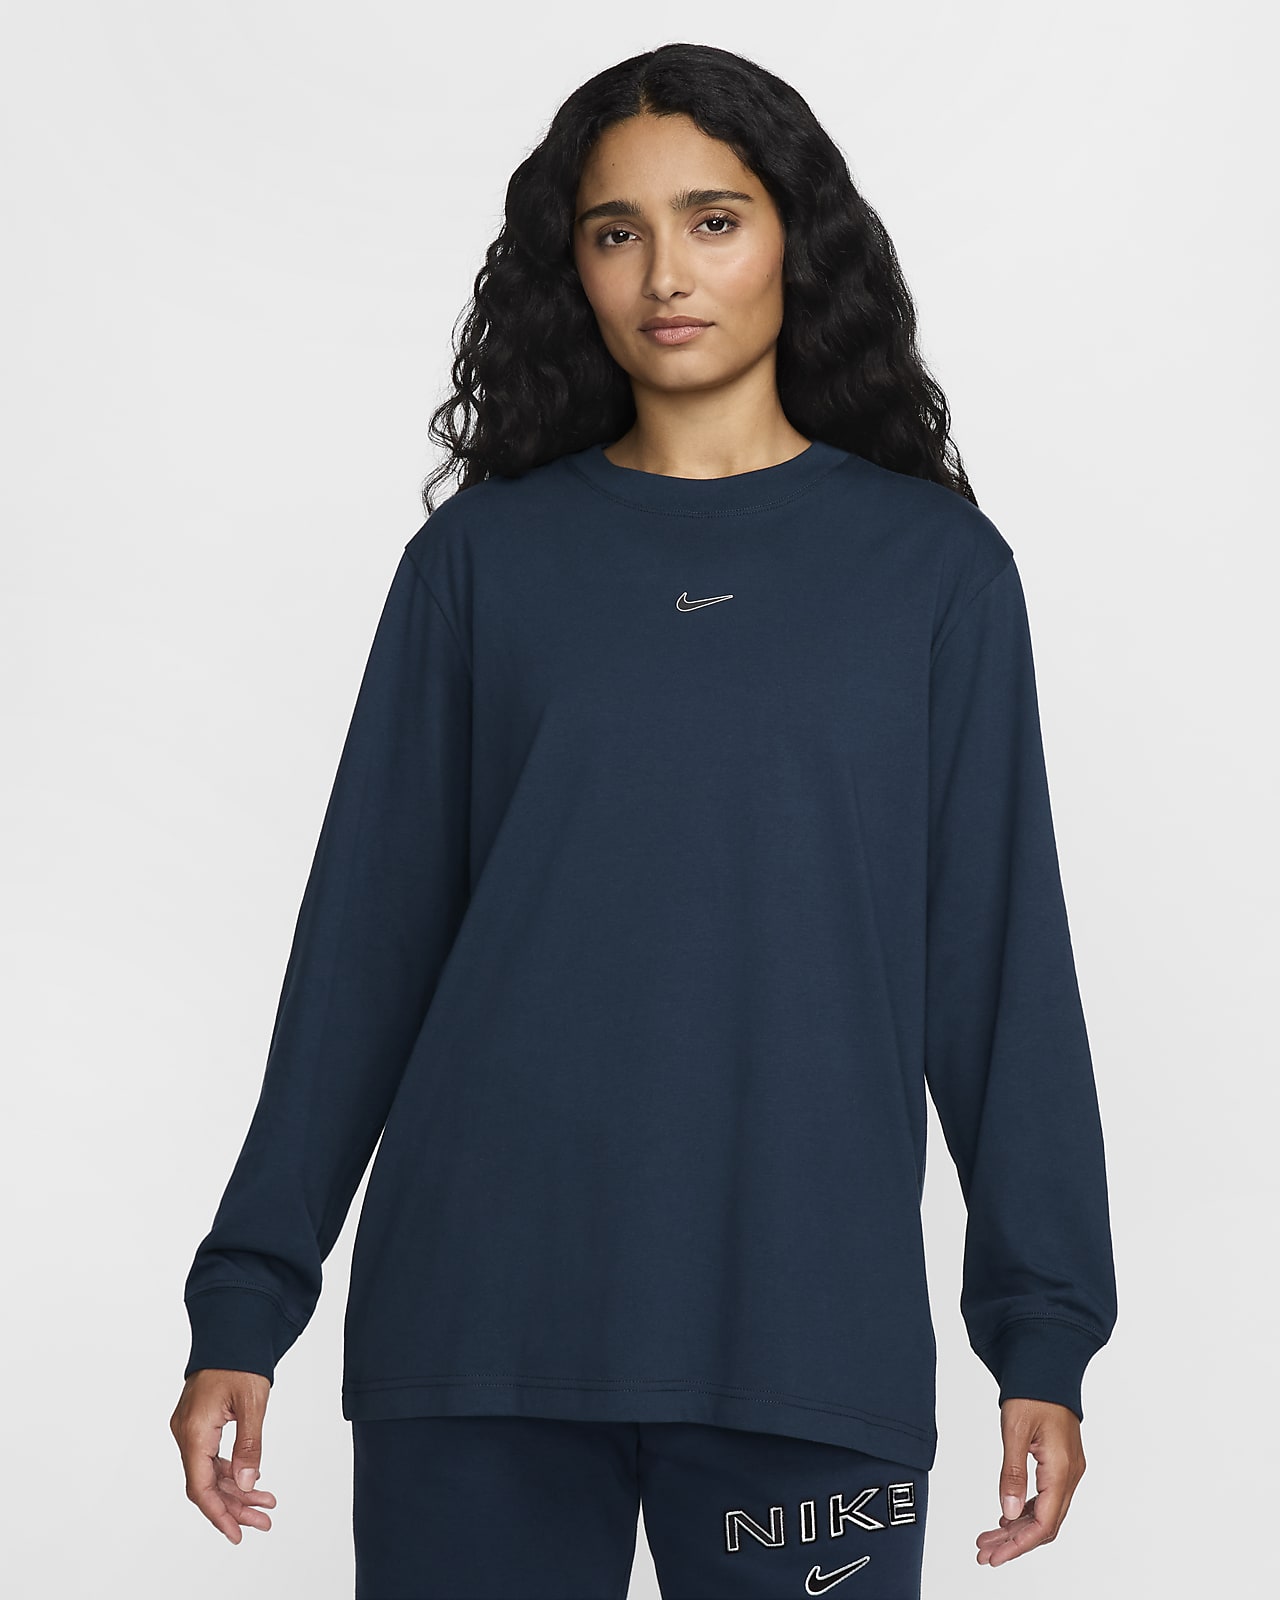 Nike Sportswear Women's Loose Long-Sleeve T-Shirt